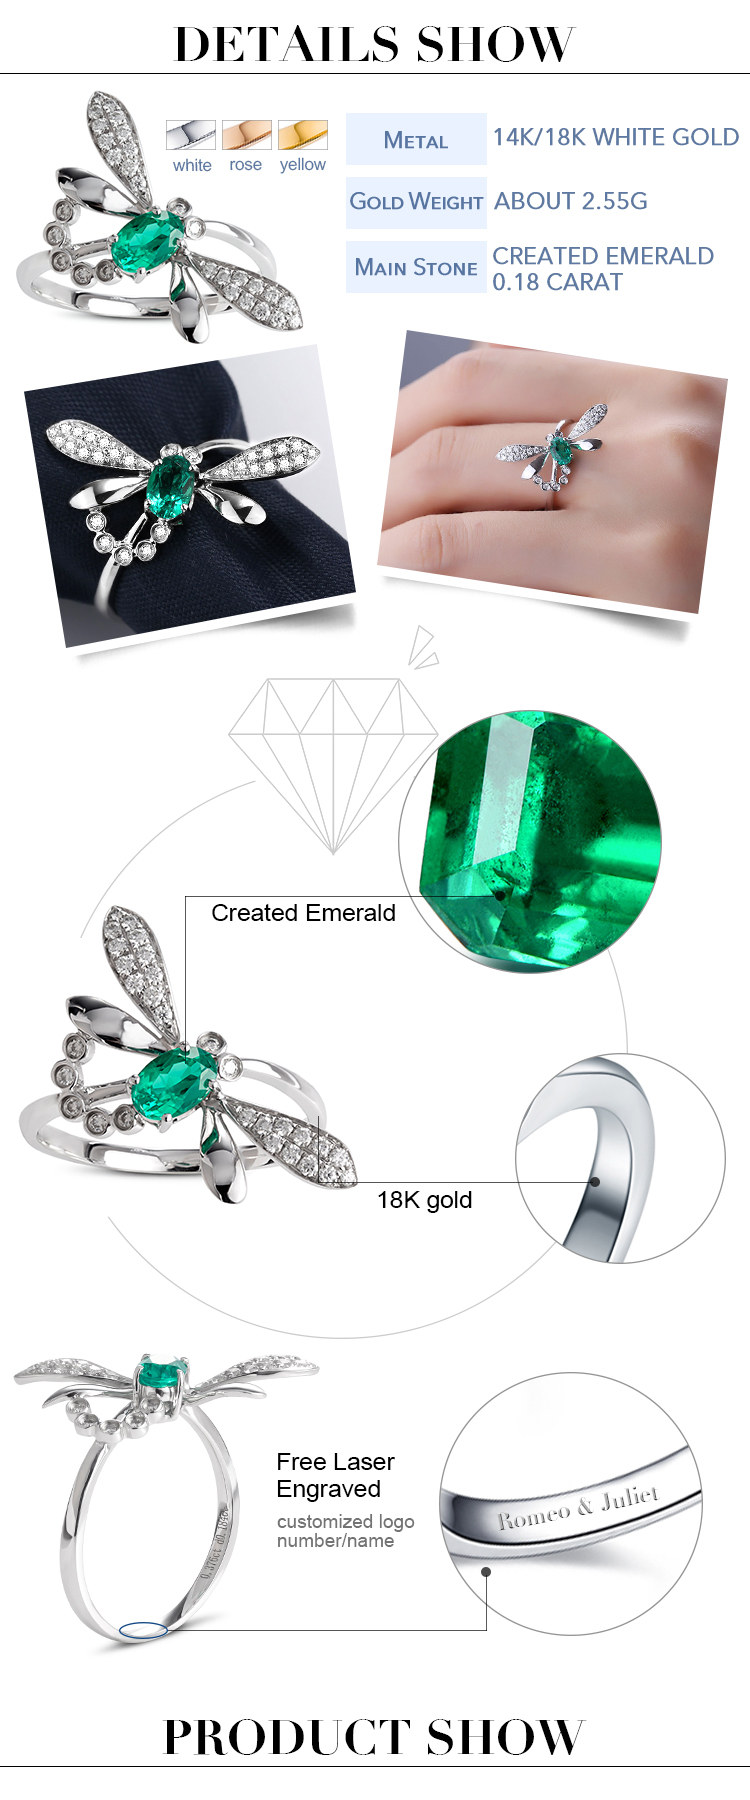 Dettagli degli anelli in oro smeraldo